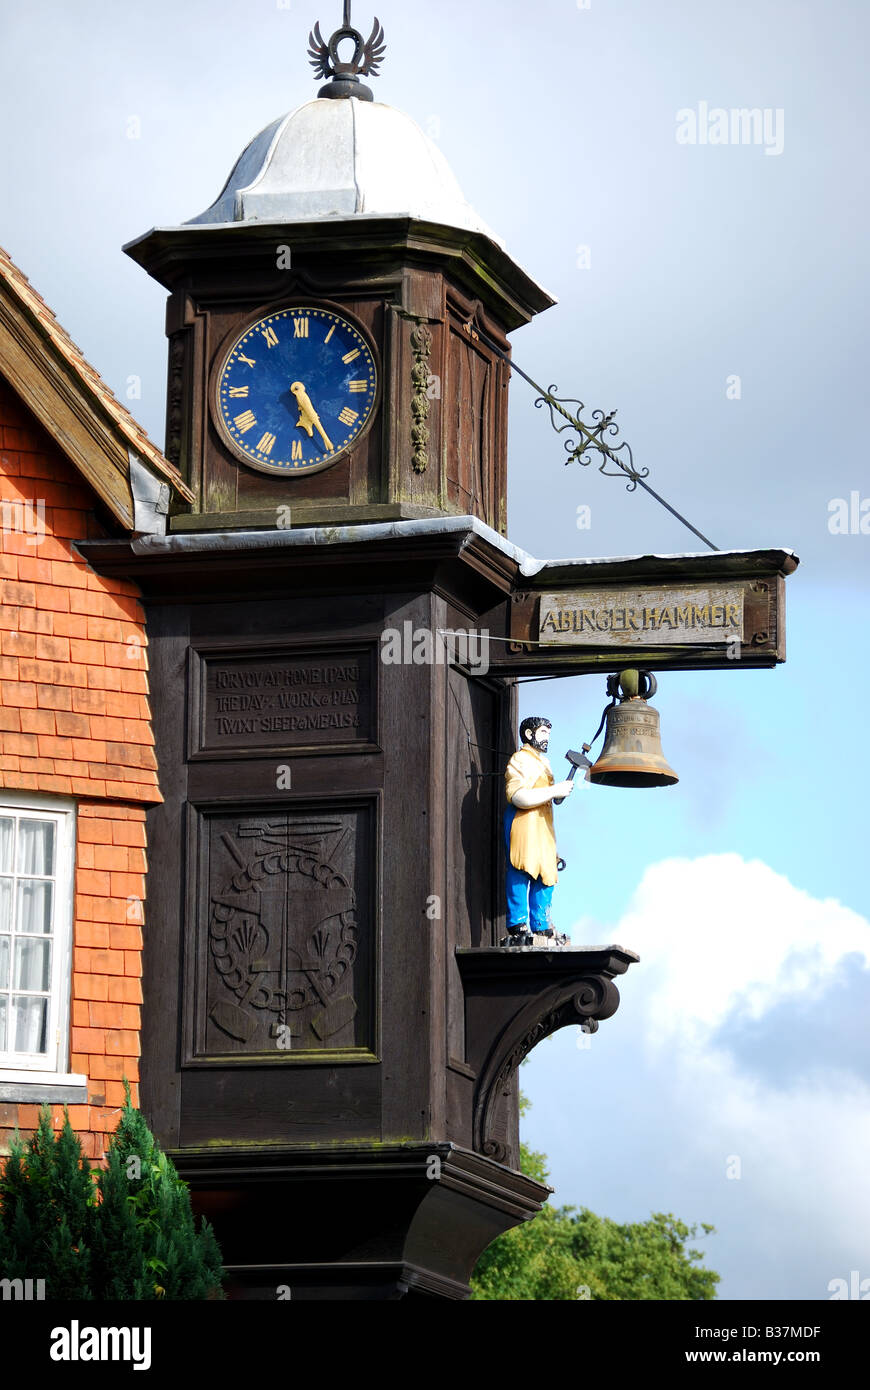 Le réveil, marteau frappant Abinger Hammer, Surrey, Angleterre, Royaume-Uni Banque D'Images